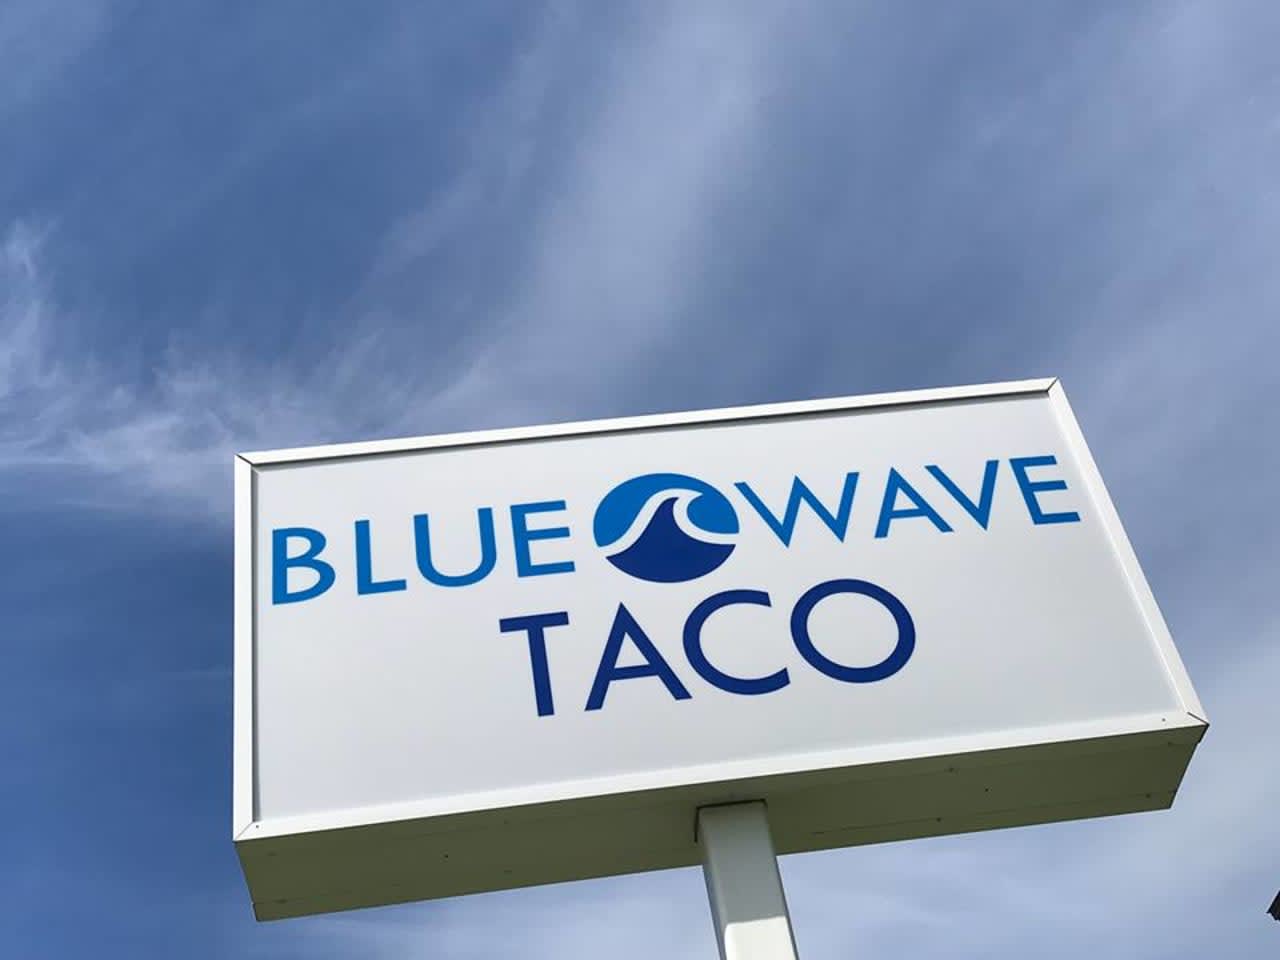 Blue Wave Taco in Darien.